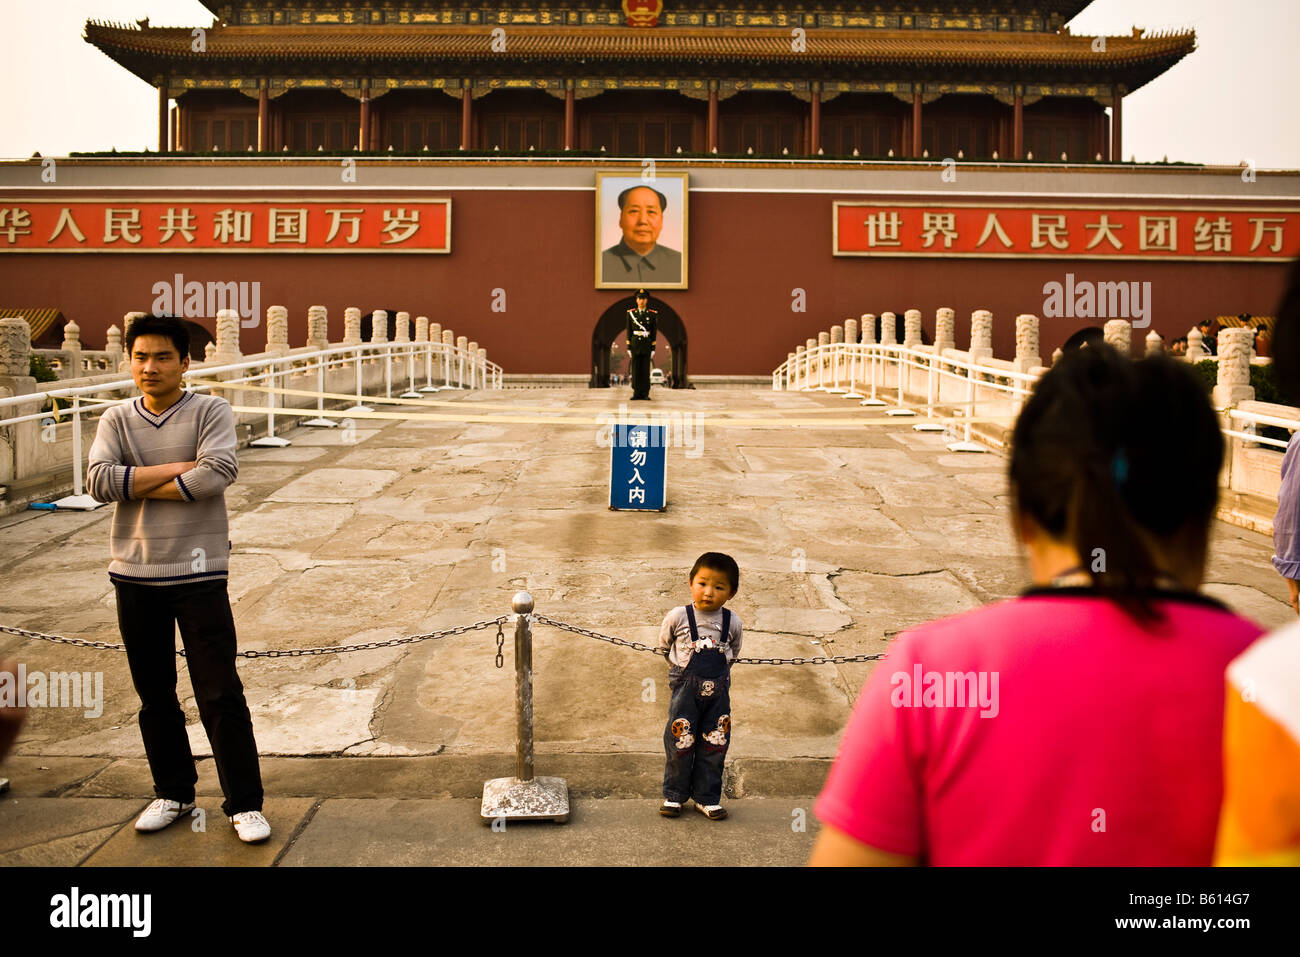 Les touristes posent devant la porte de la paix céleste près de la place Tiananmen à Beijing en Chine en avril 2008 Banque D'Images